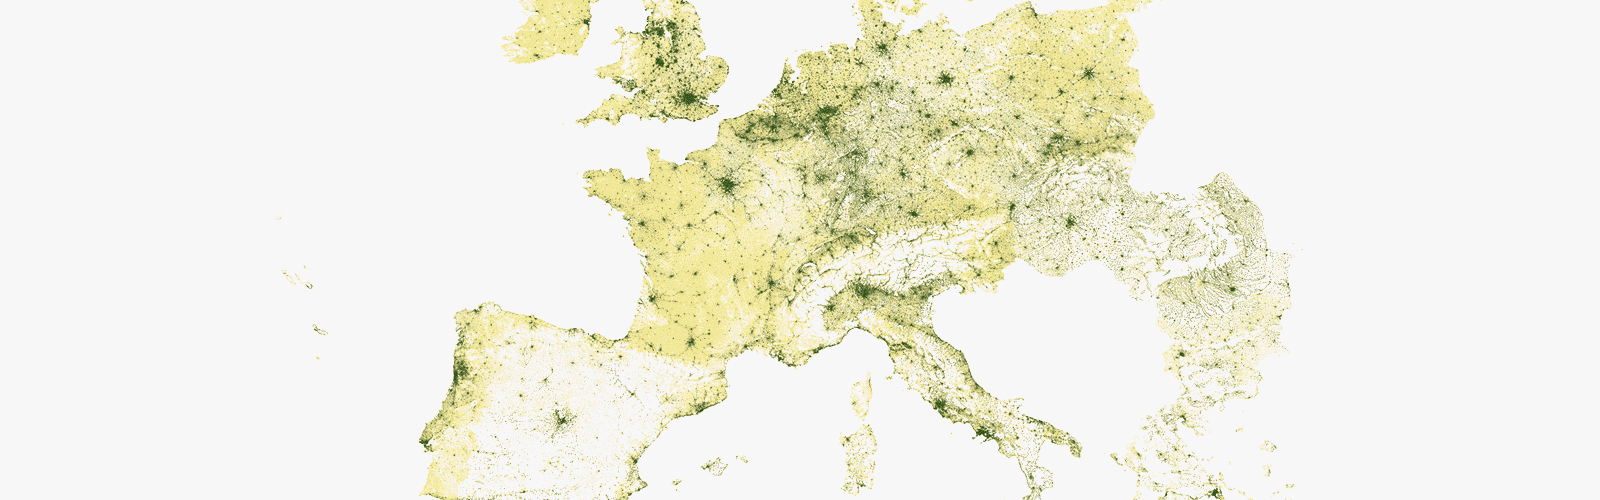 Distribuição da população na Europa